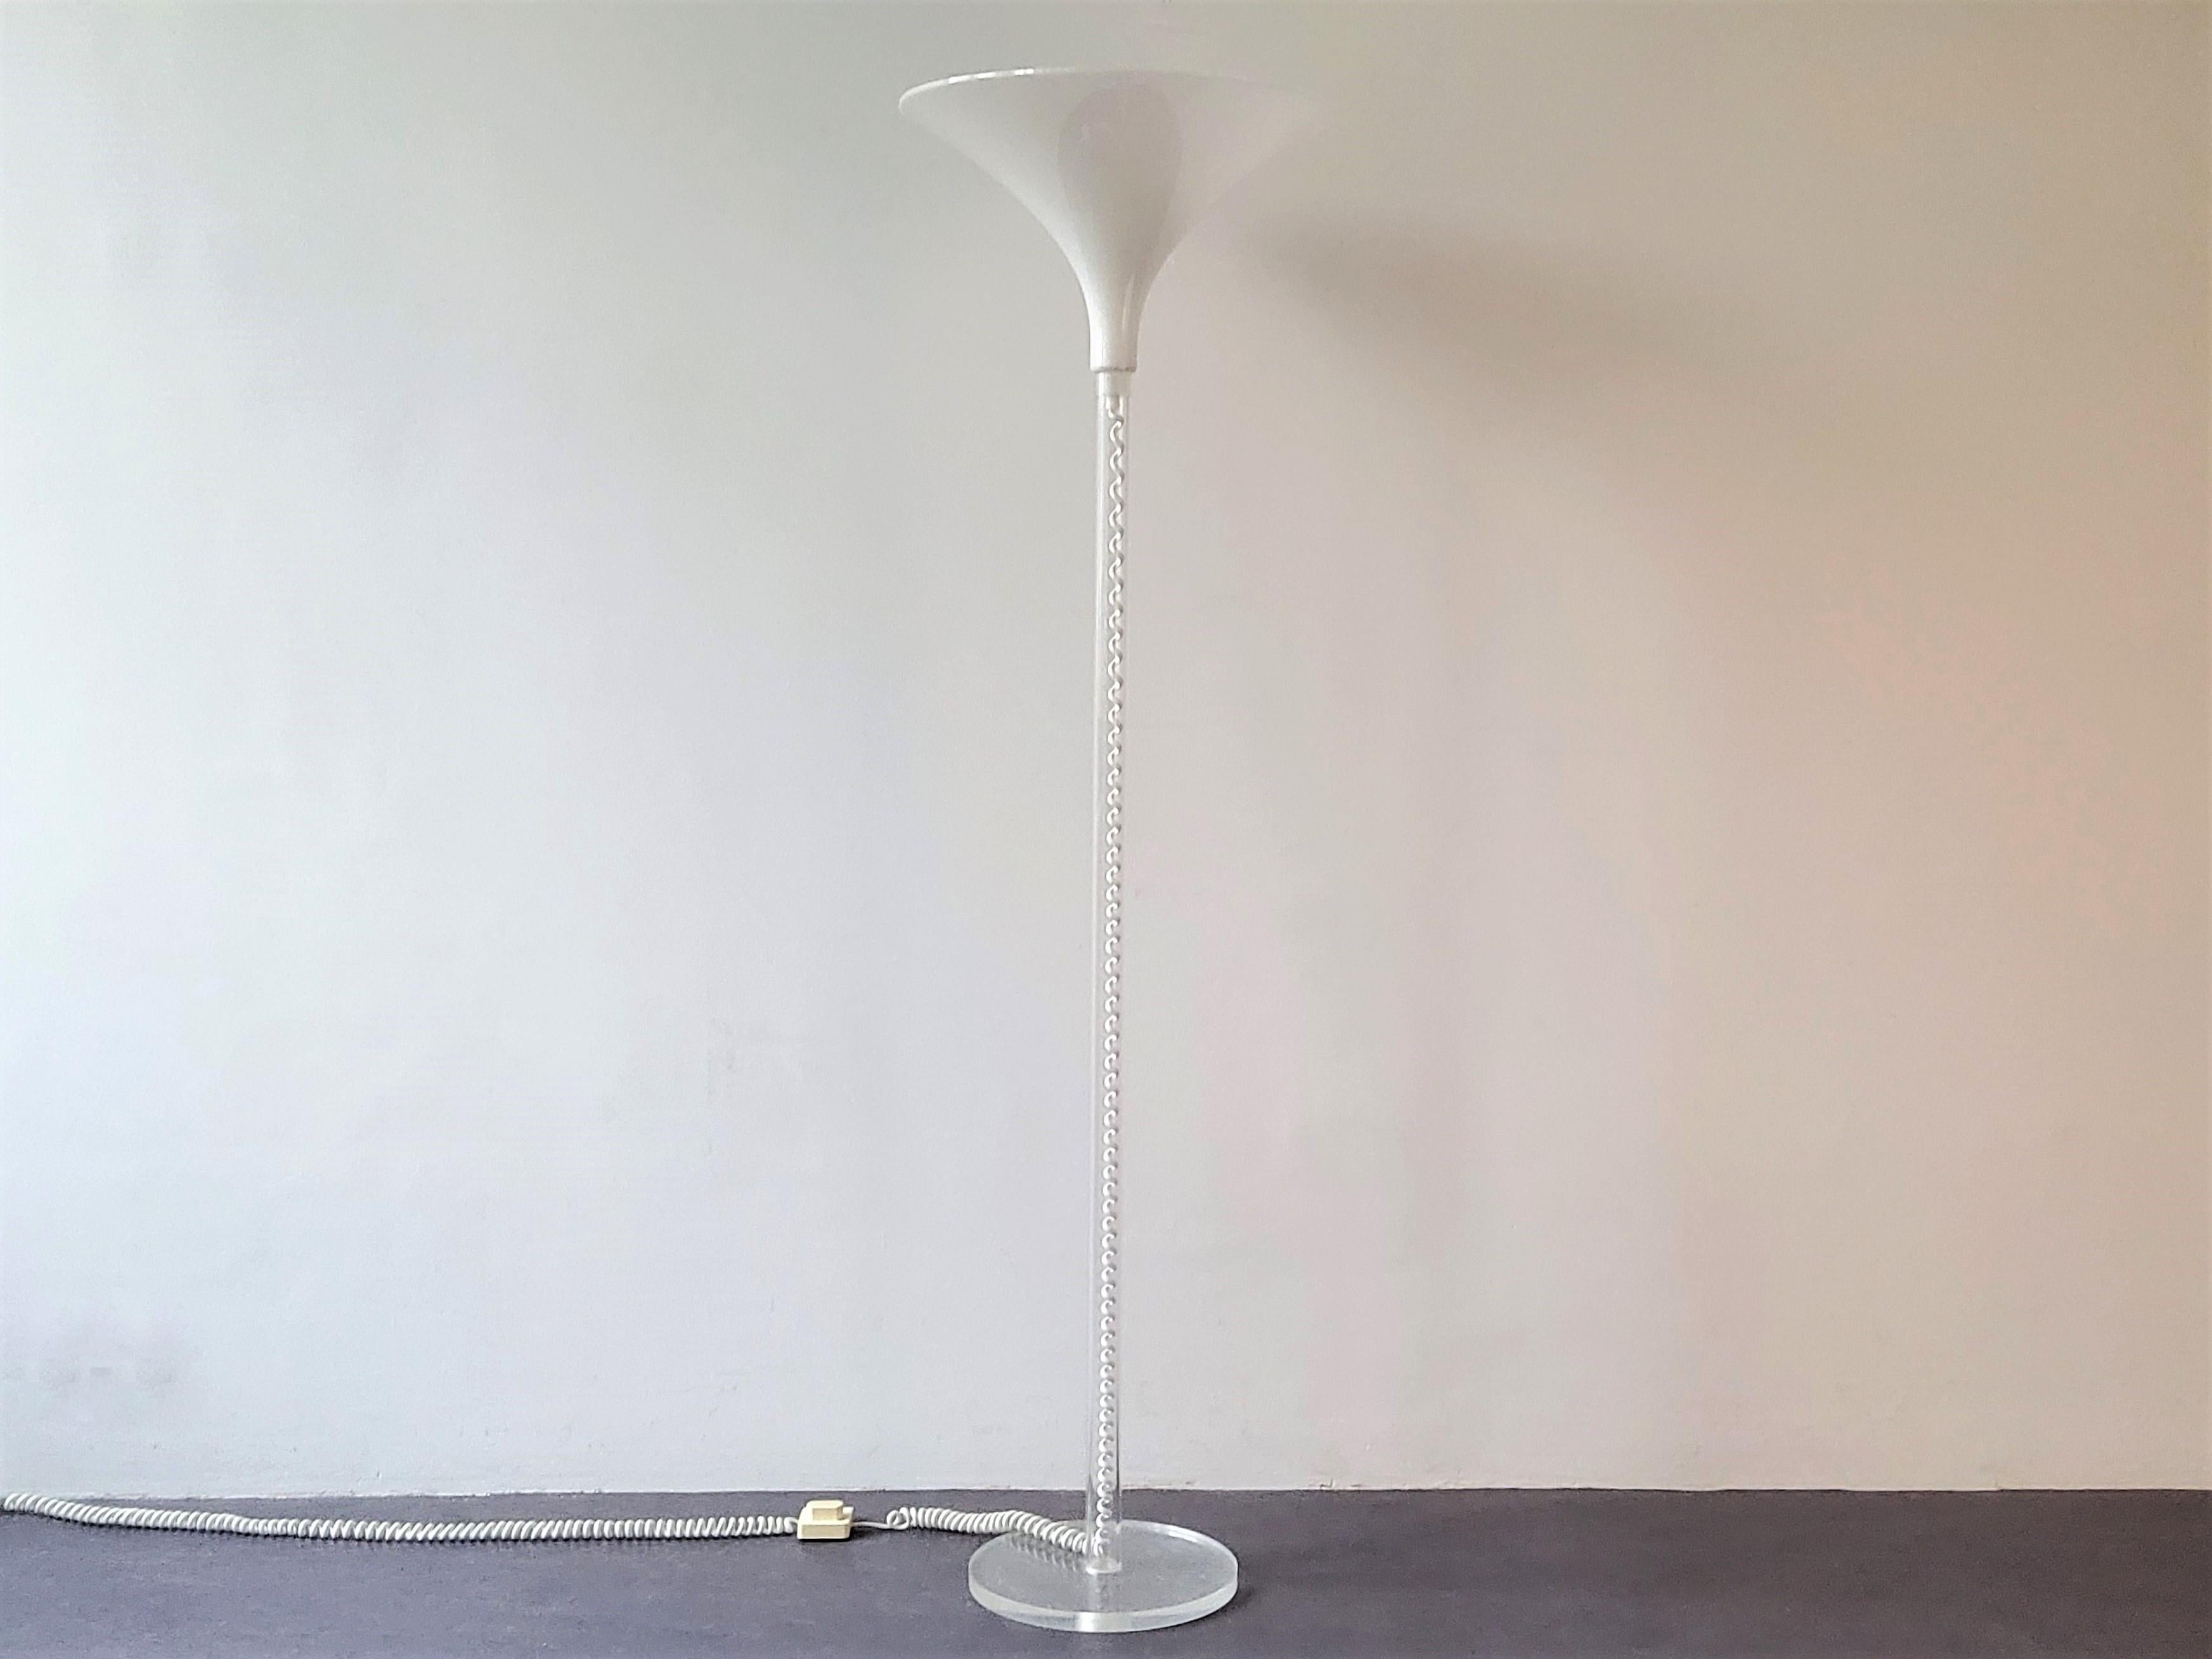 Ce magnifique lampadaire a été fabriqué par Harco Loor Haarlem dans les années 1980. Un design magnifique. La base est constituée d'un tube en plexiglas avec un câblage visible à l'intérieur, reposant sur un pied rond en plexiglas. Whiting dispose